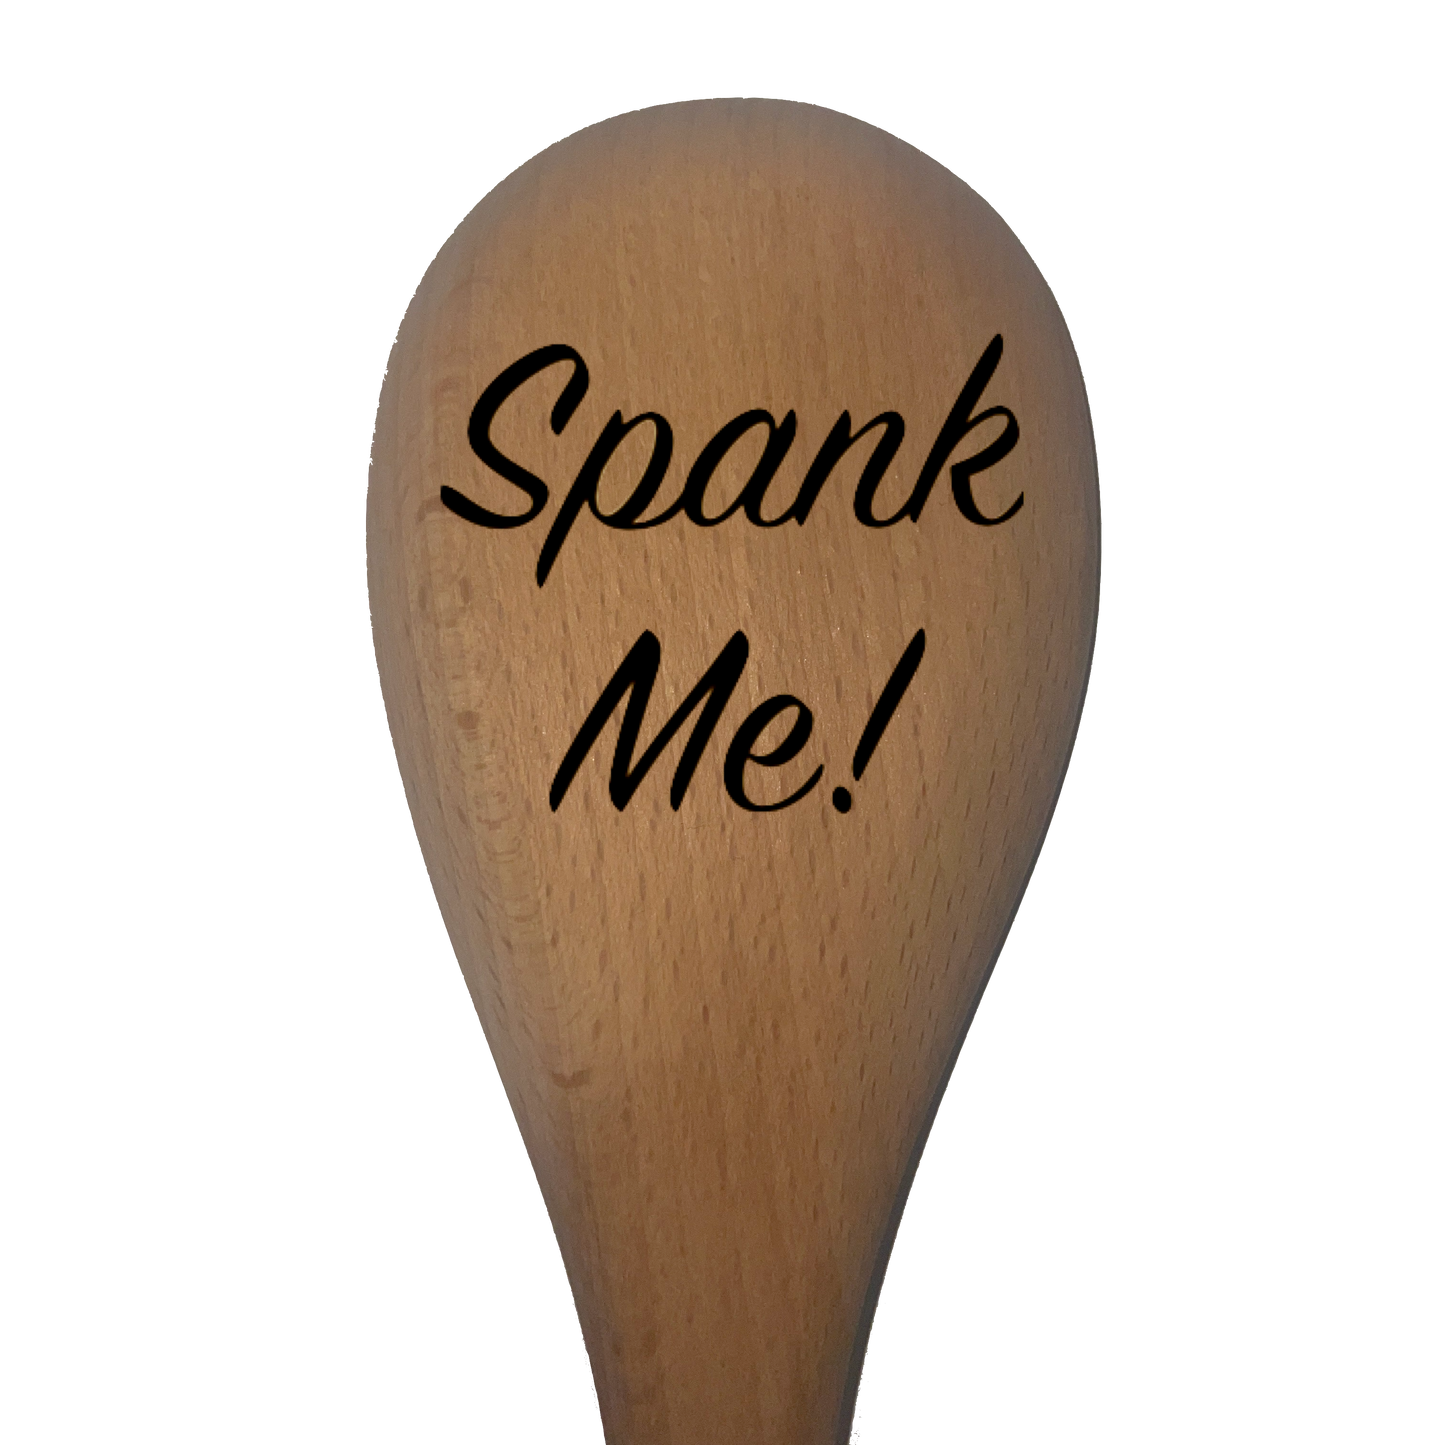 Spank Me! - Spoon